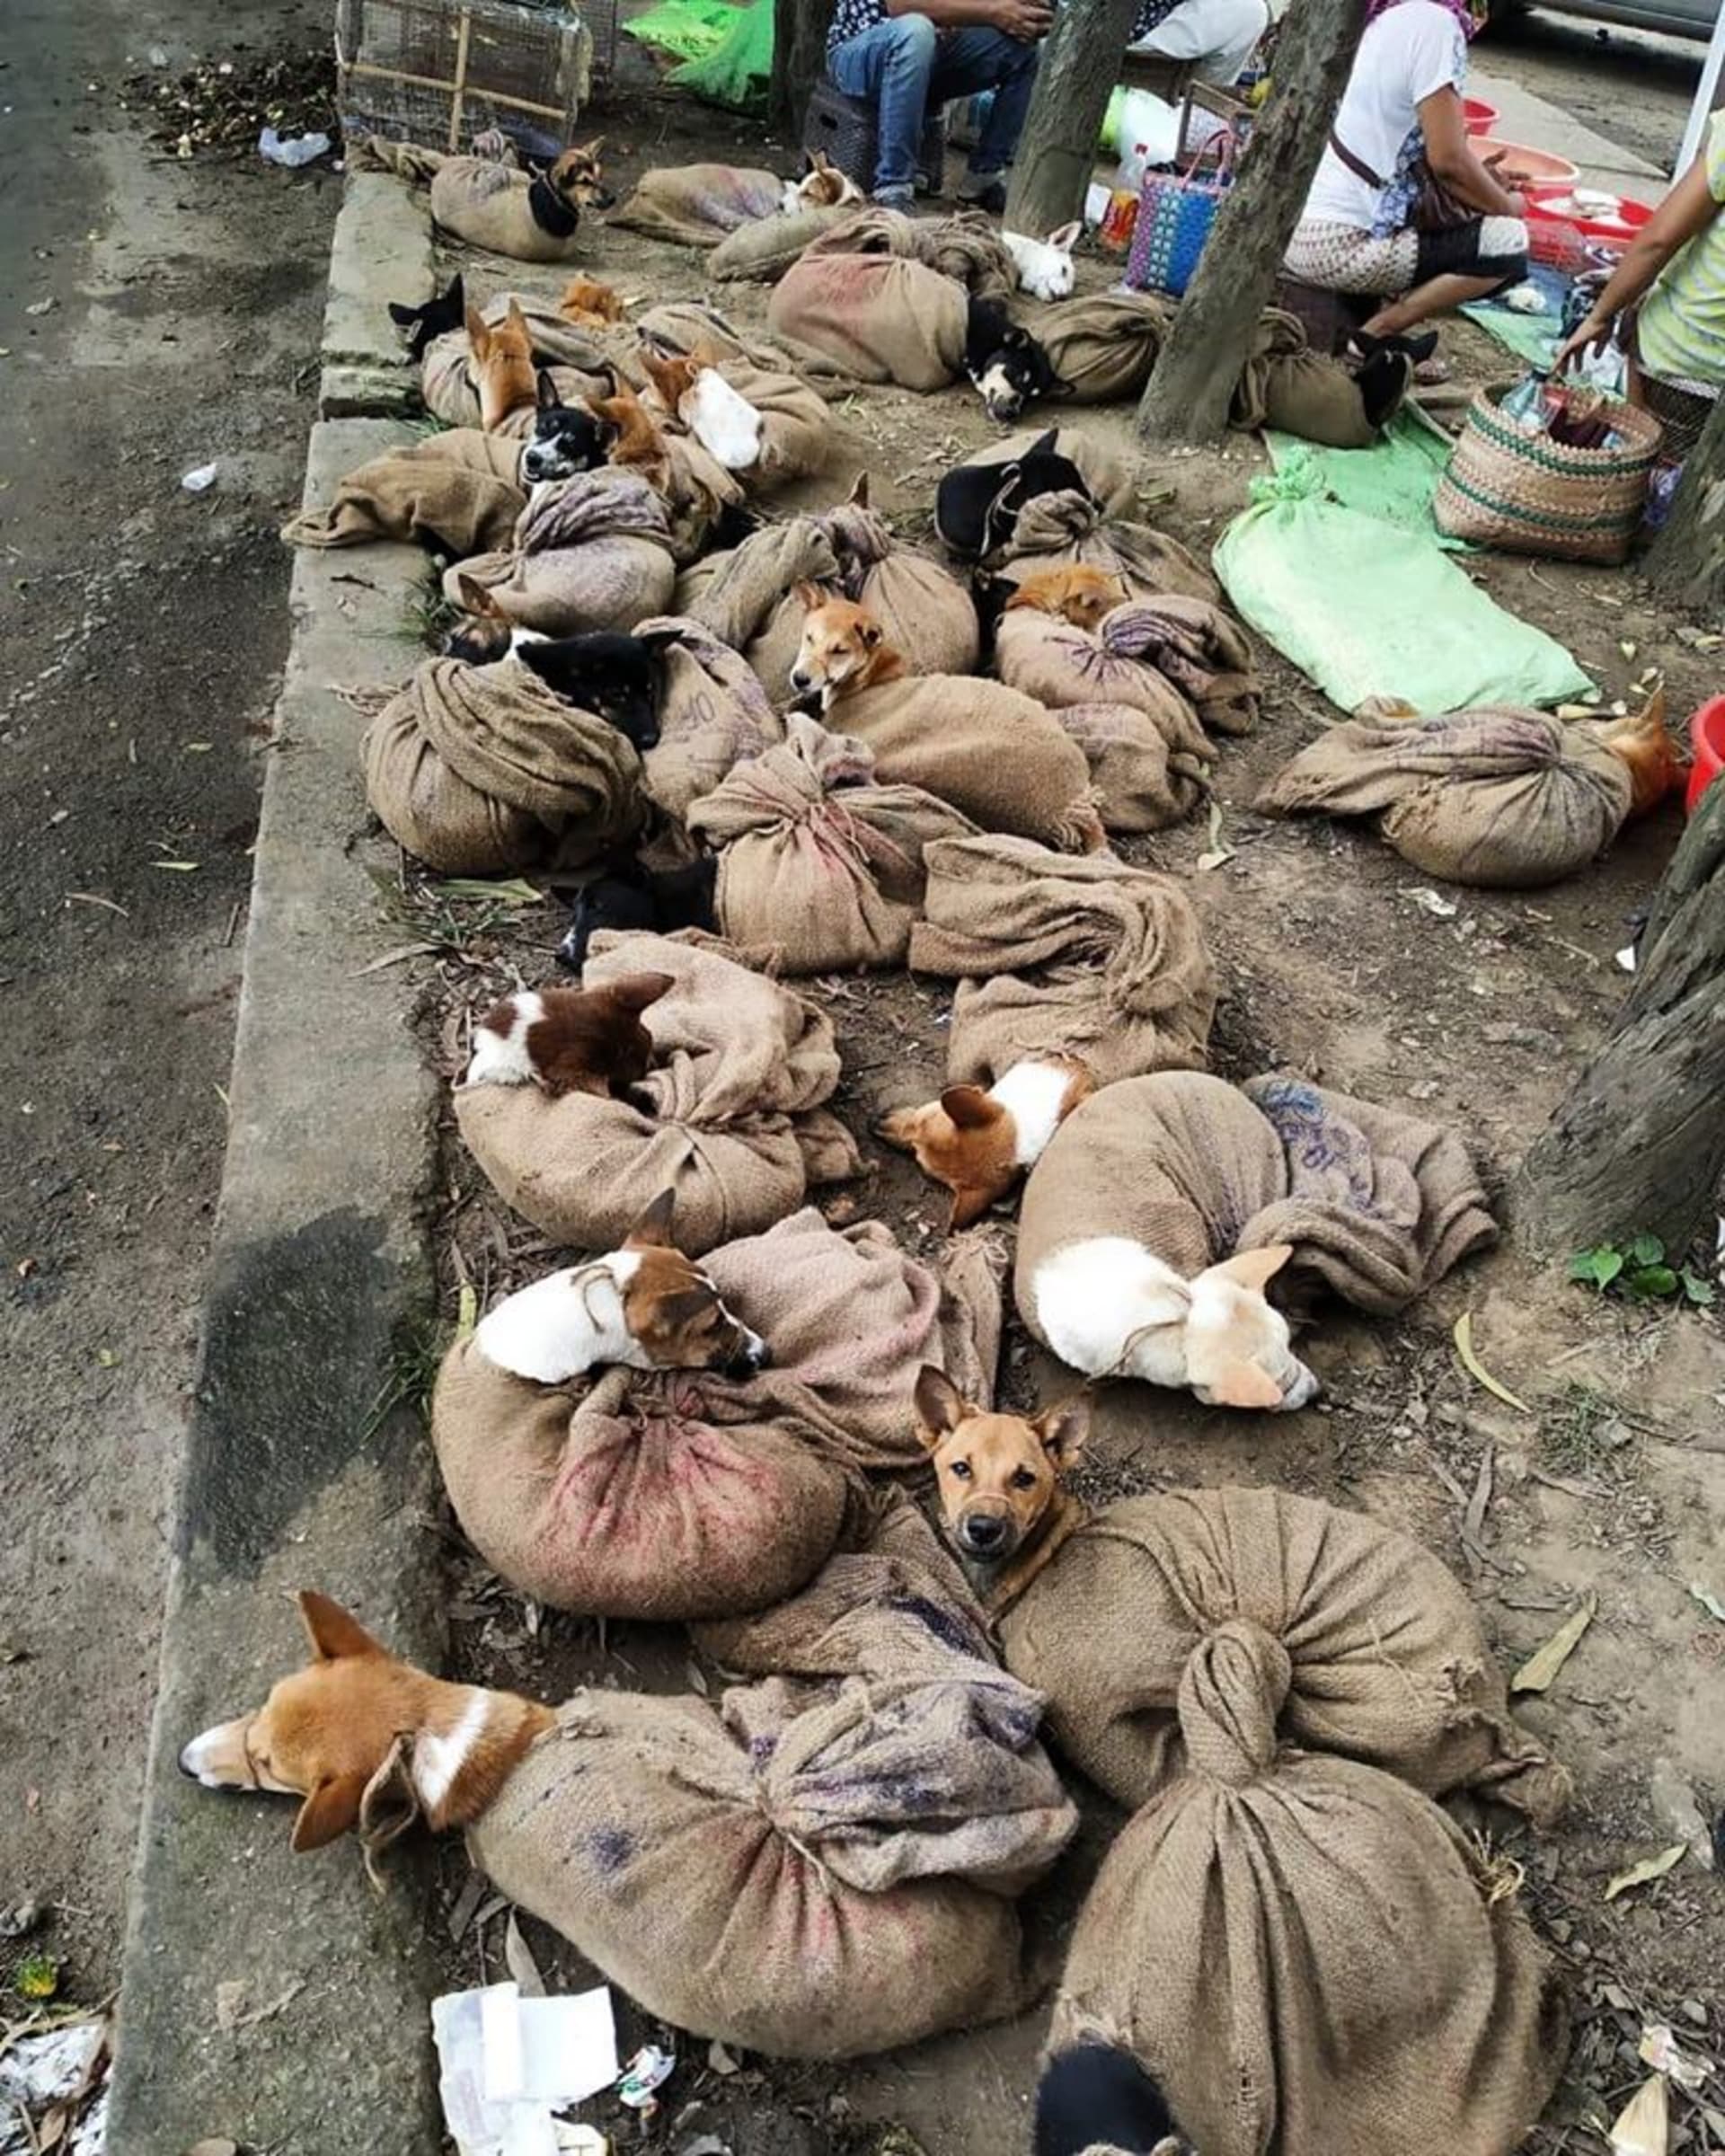 Fotka svázaných psů byla pro úřady i aktivisty poslední kapkou. Zdroj: Facebook People for Animals